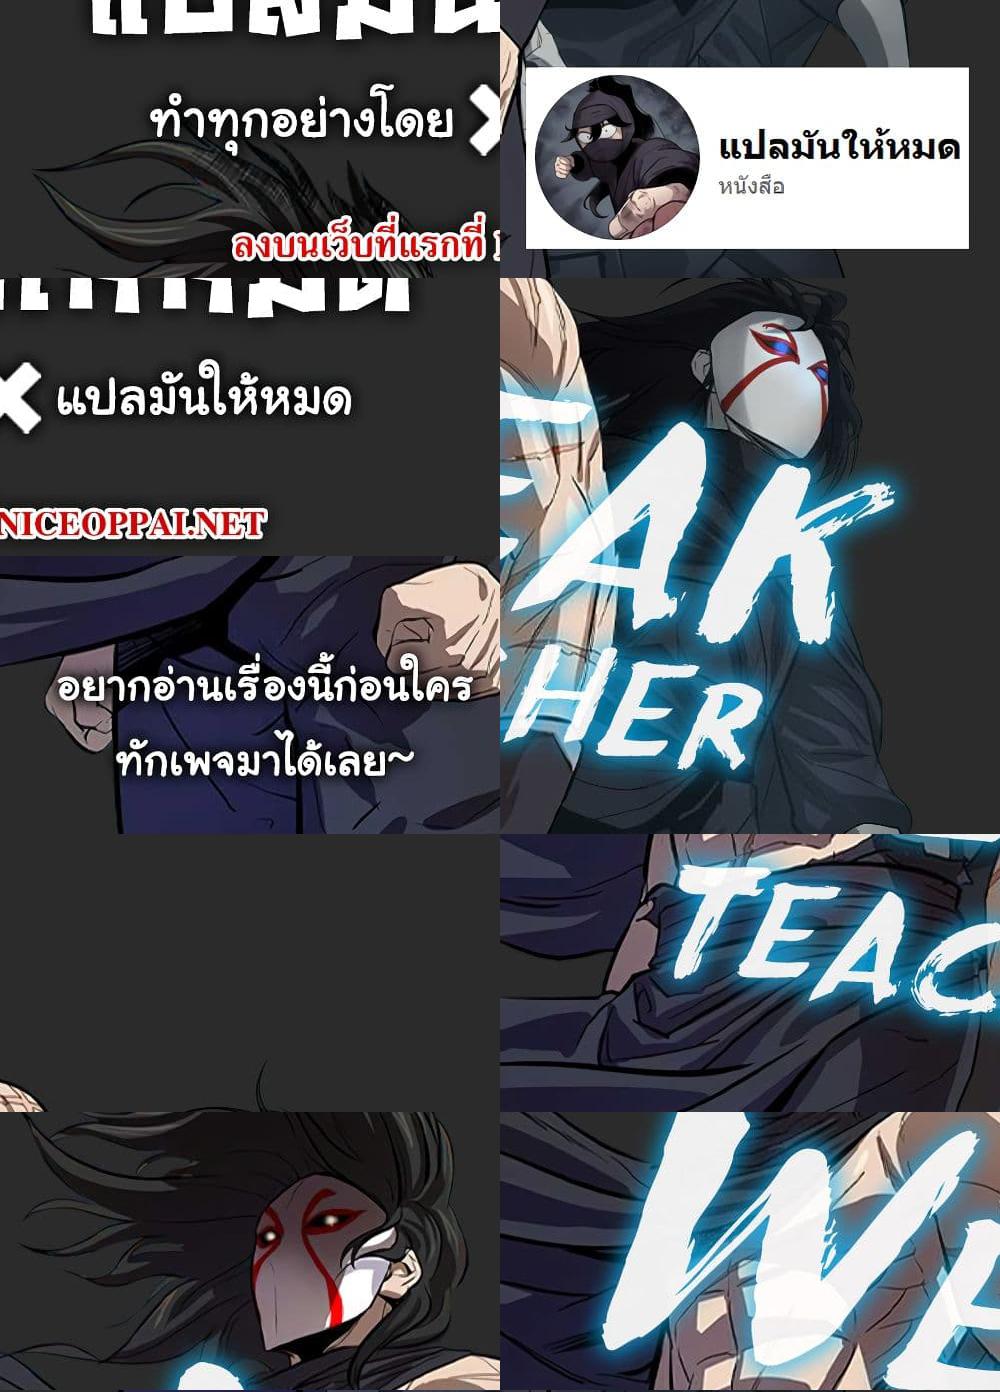 Weak Teacher - 10 - 1